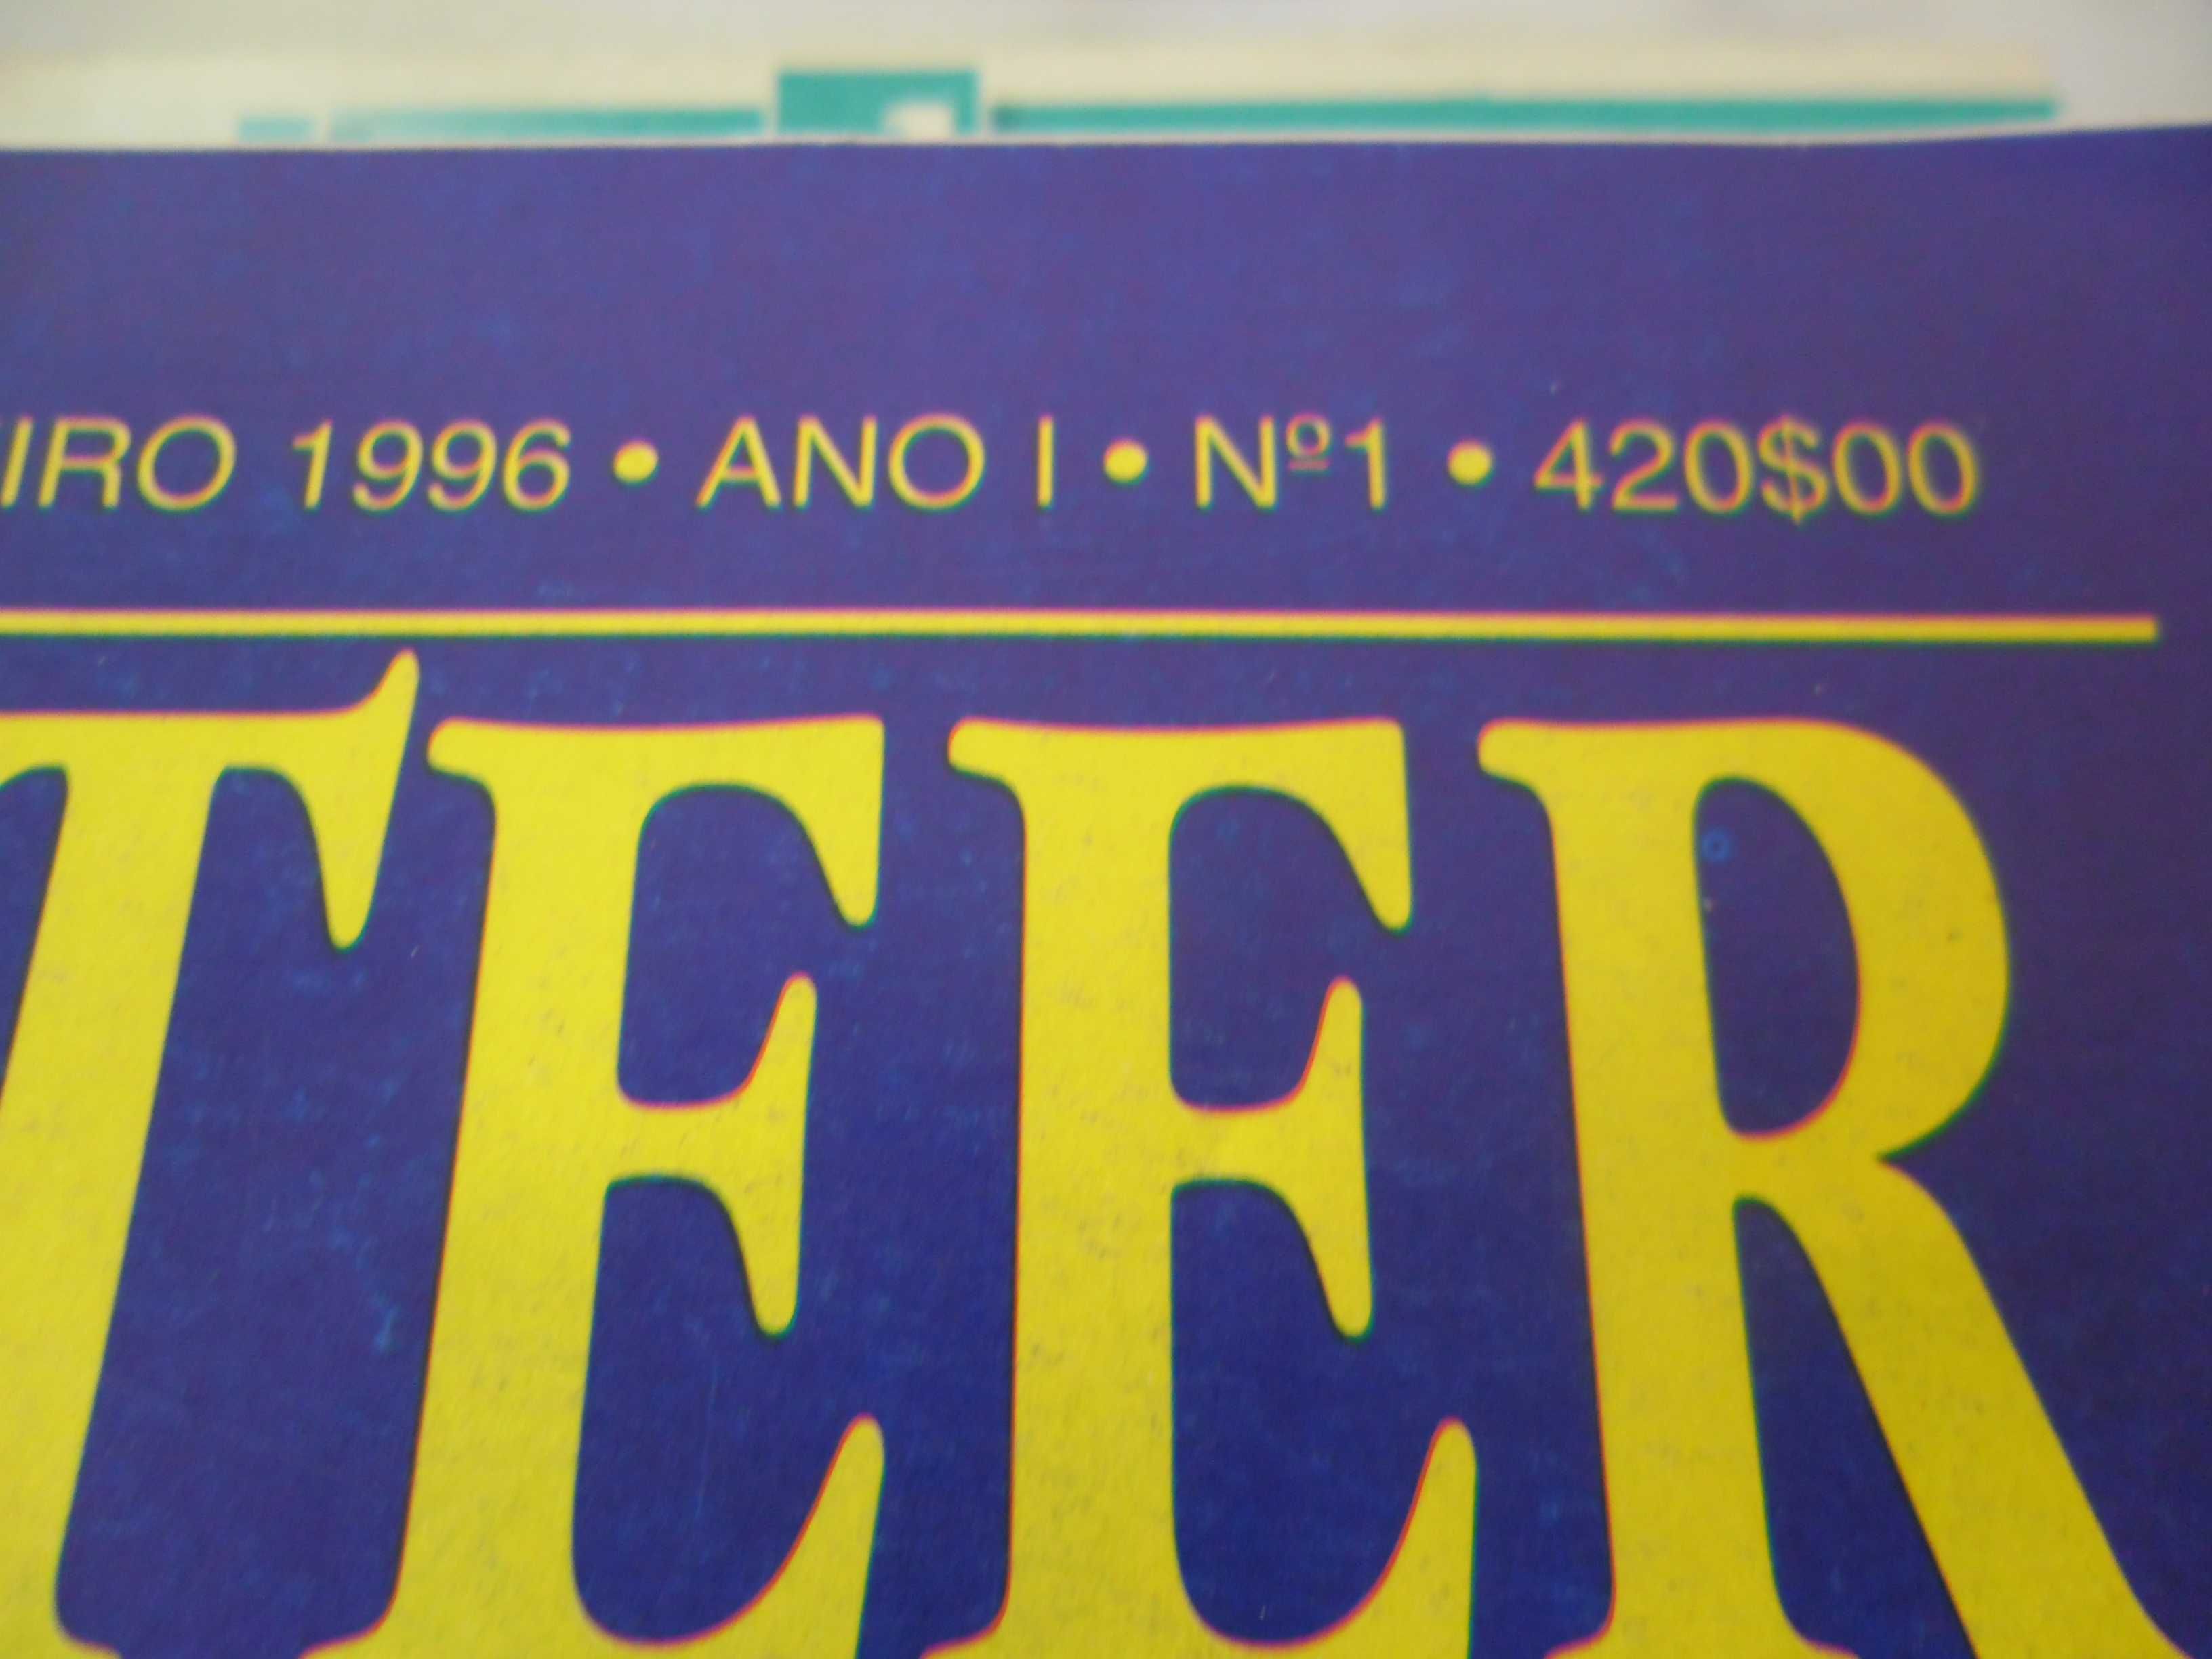 Revista MARKETEER, número 1 (1996 ano lançamento revista) a 2005